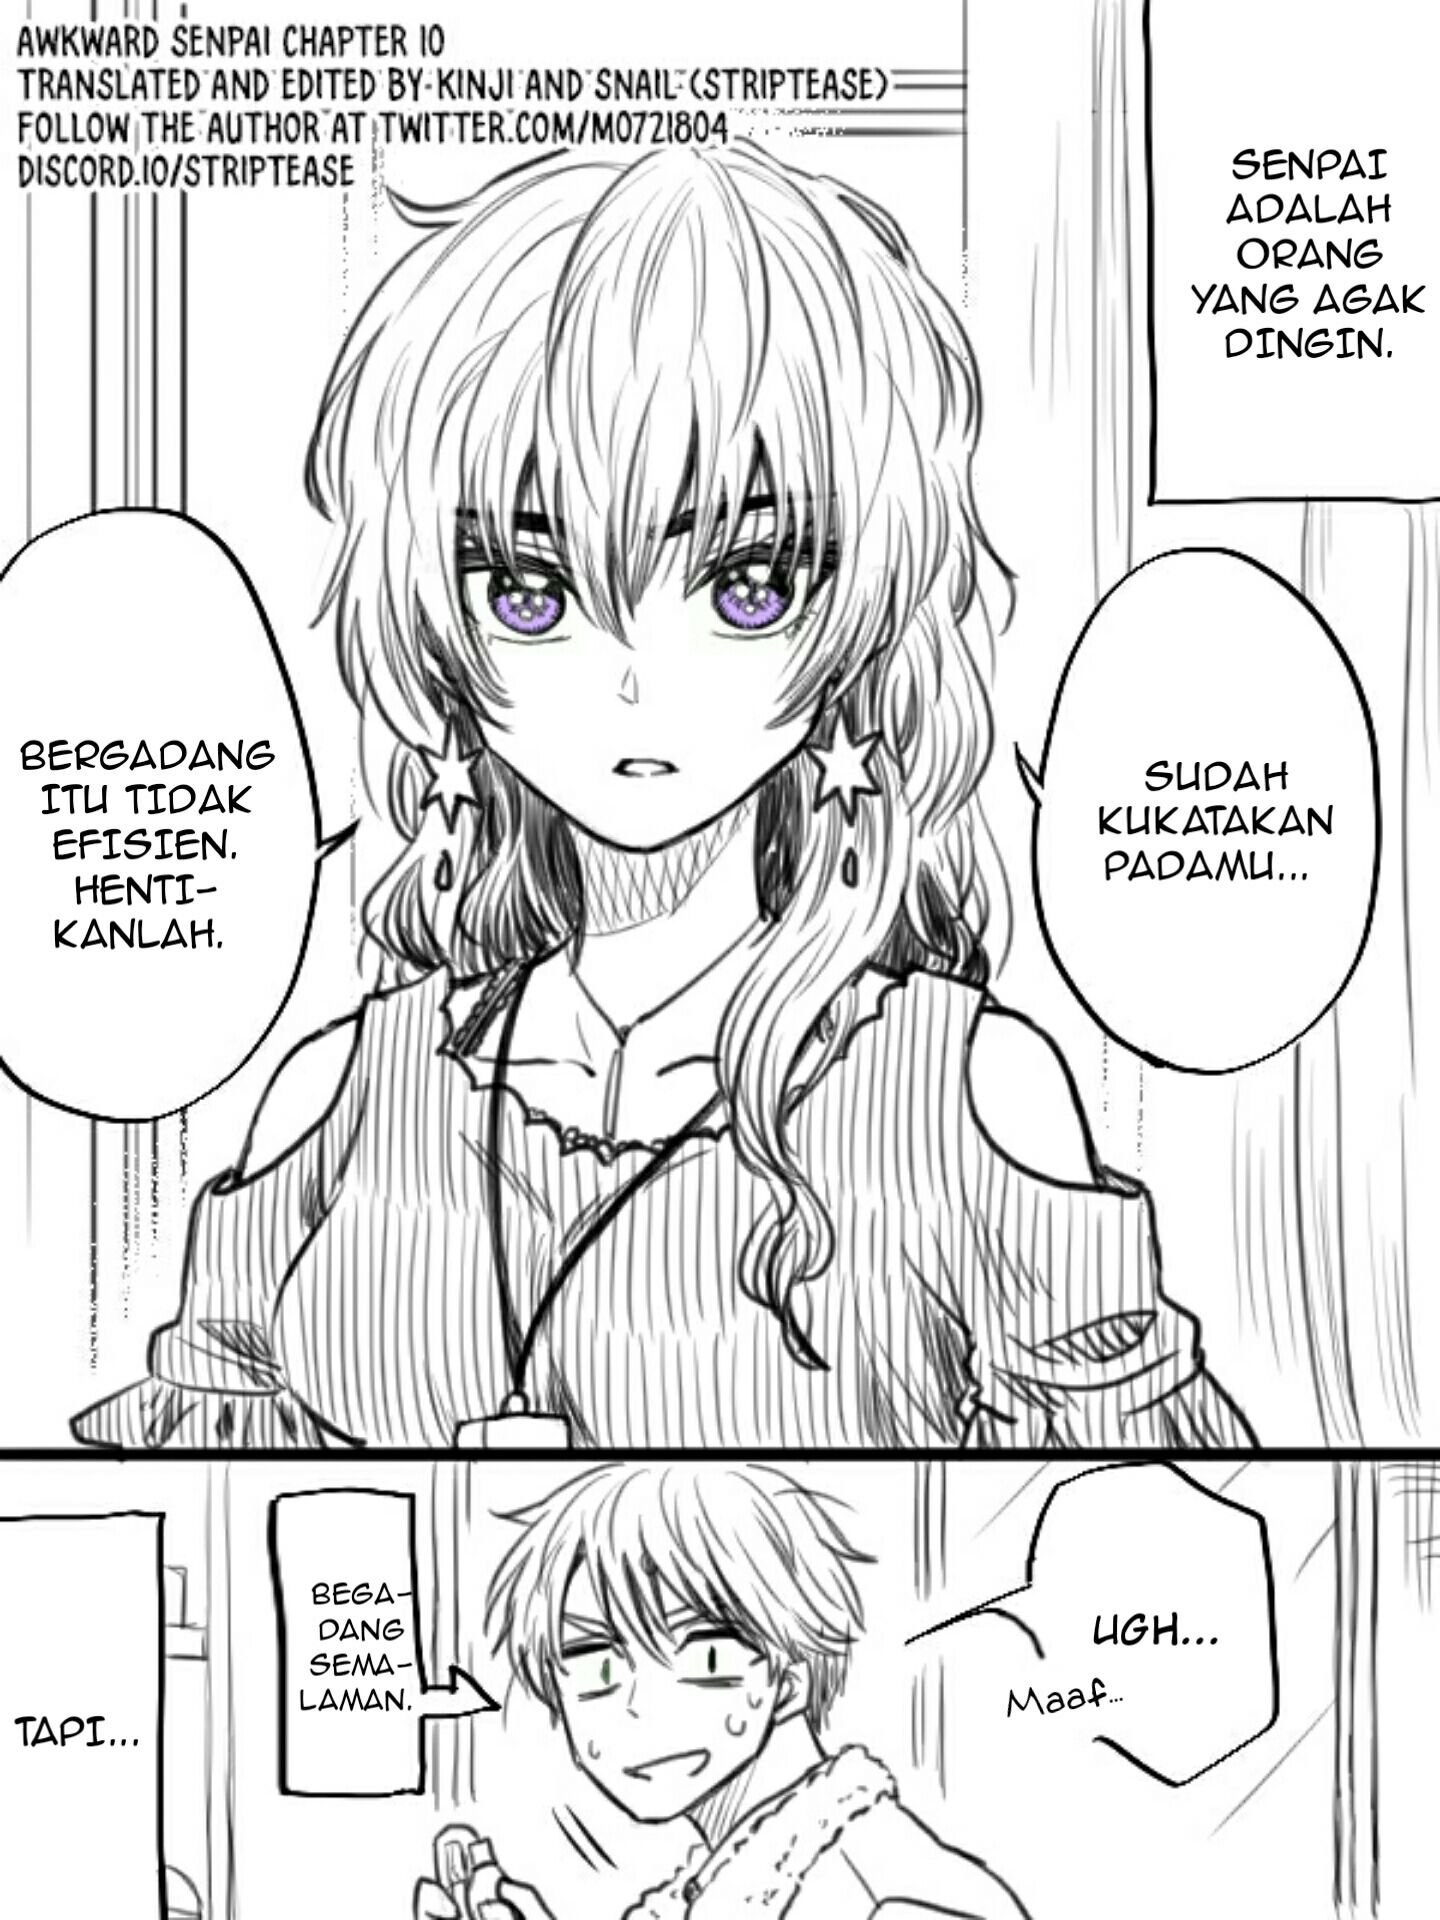 Awkward Senpai Chapter 10